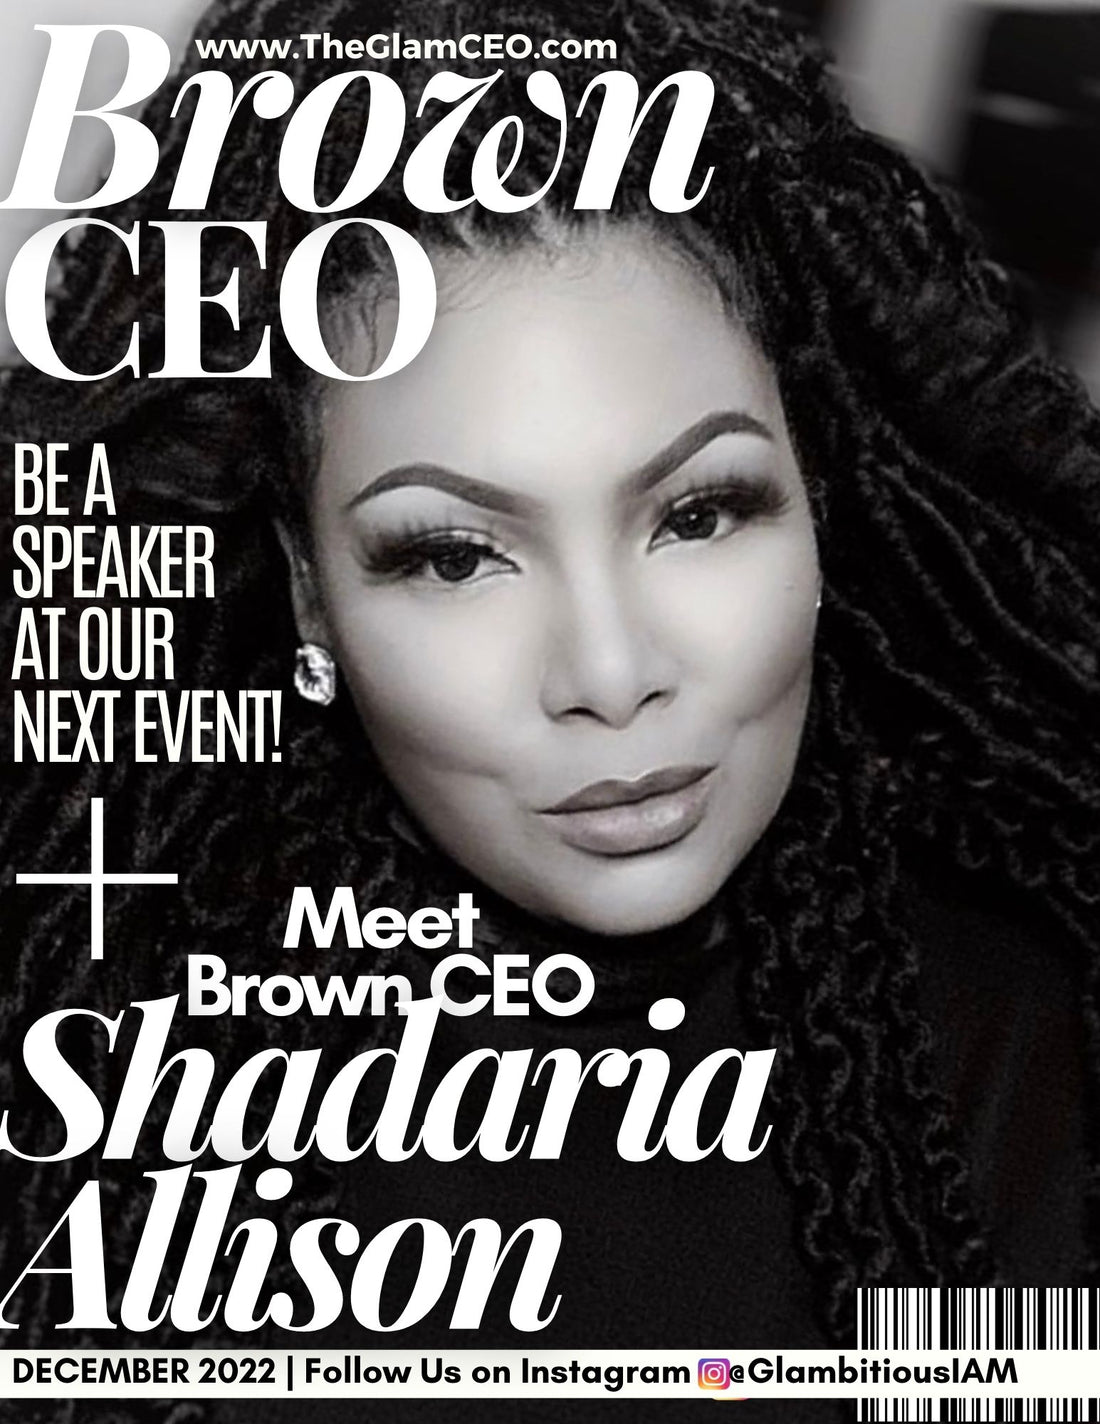 Meet Brown CEO: Shadaria Allison